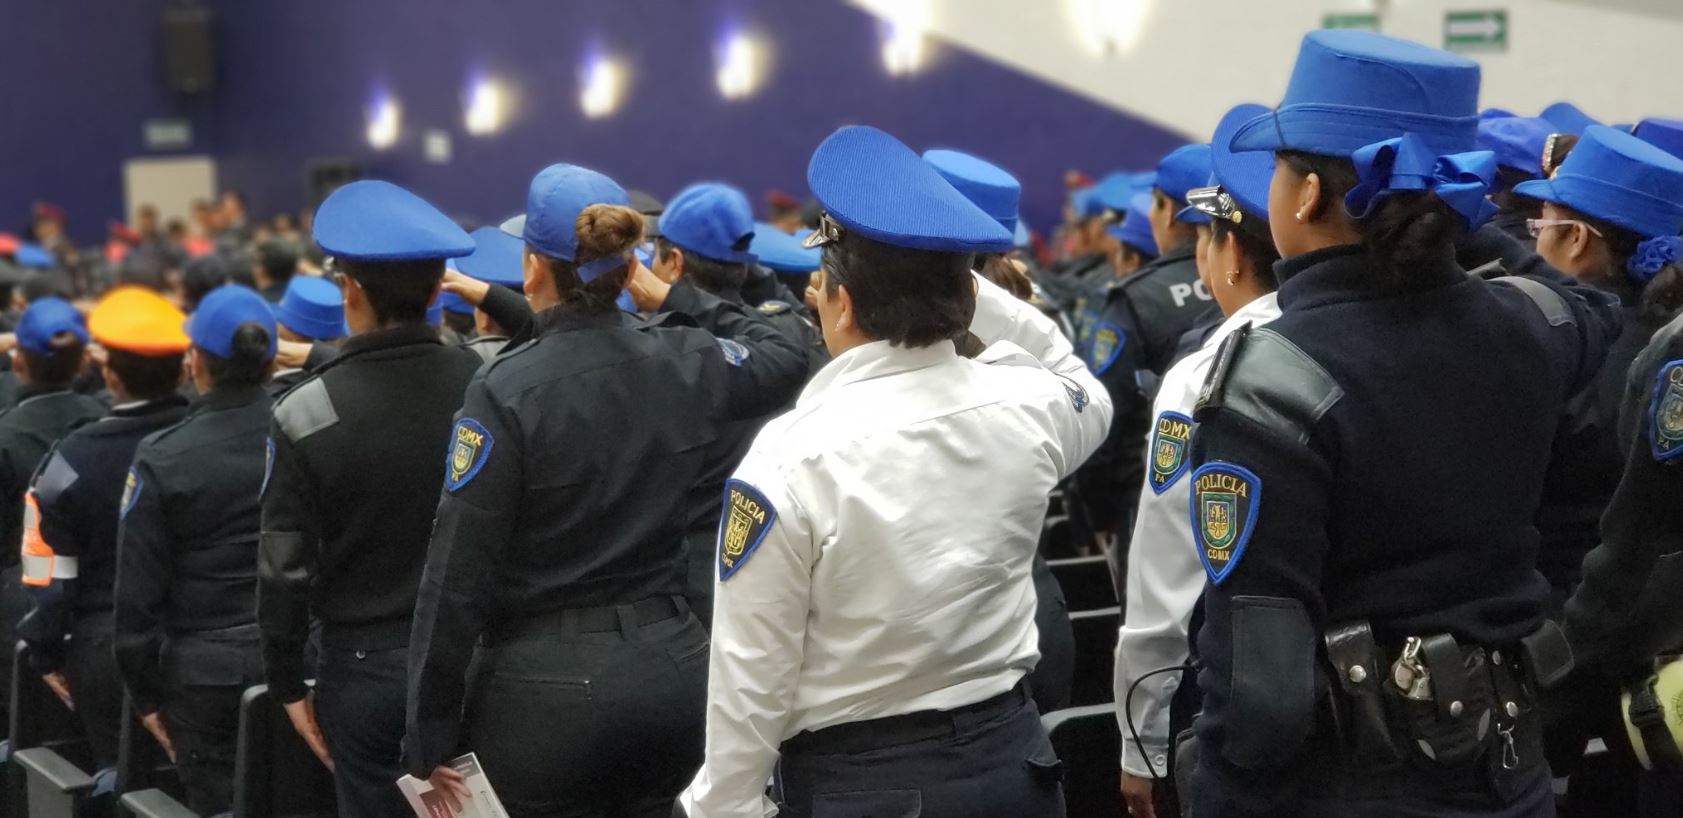 sspcdmx firma contratos millonarios uniformes que no llegan policias